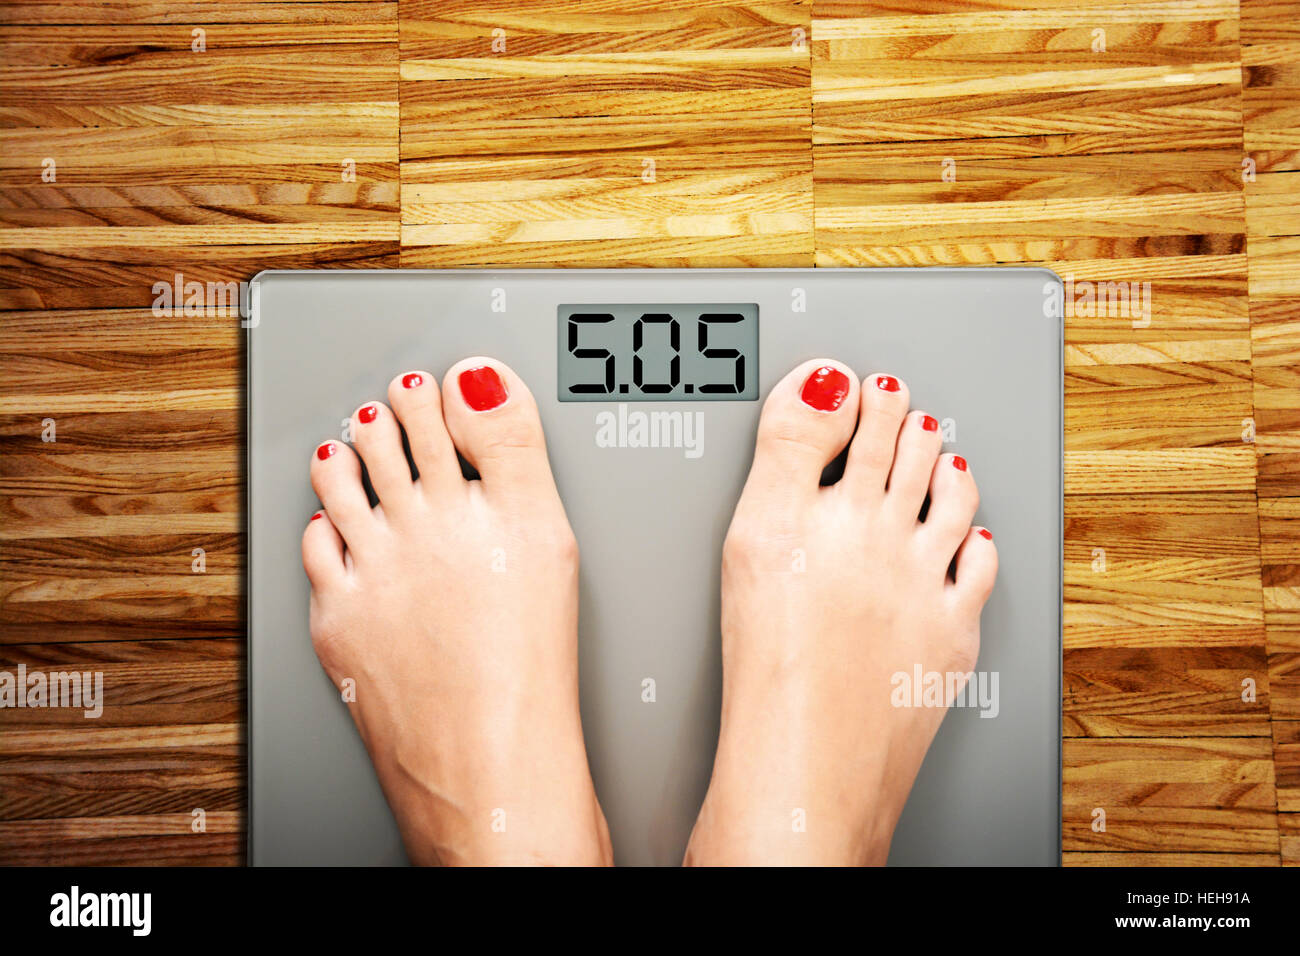 Perdre du poids concept avec personne sur une échelle mesurant le kilogrammes Banque D'Images